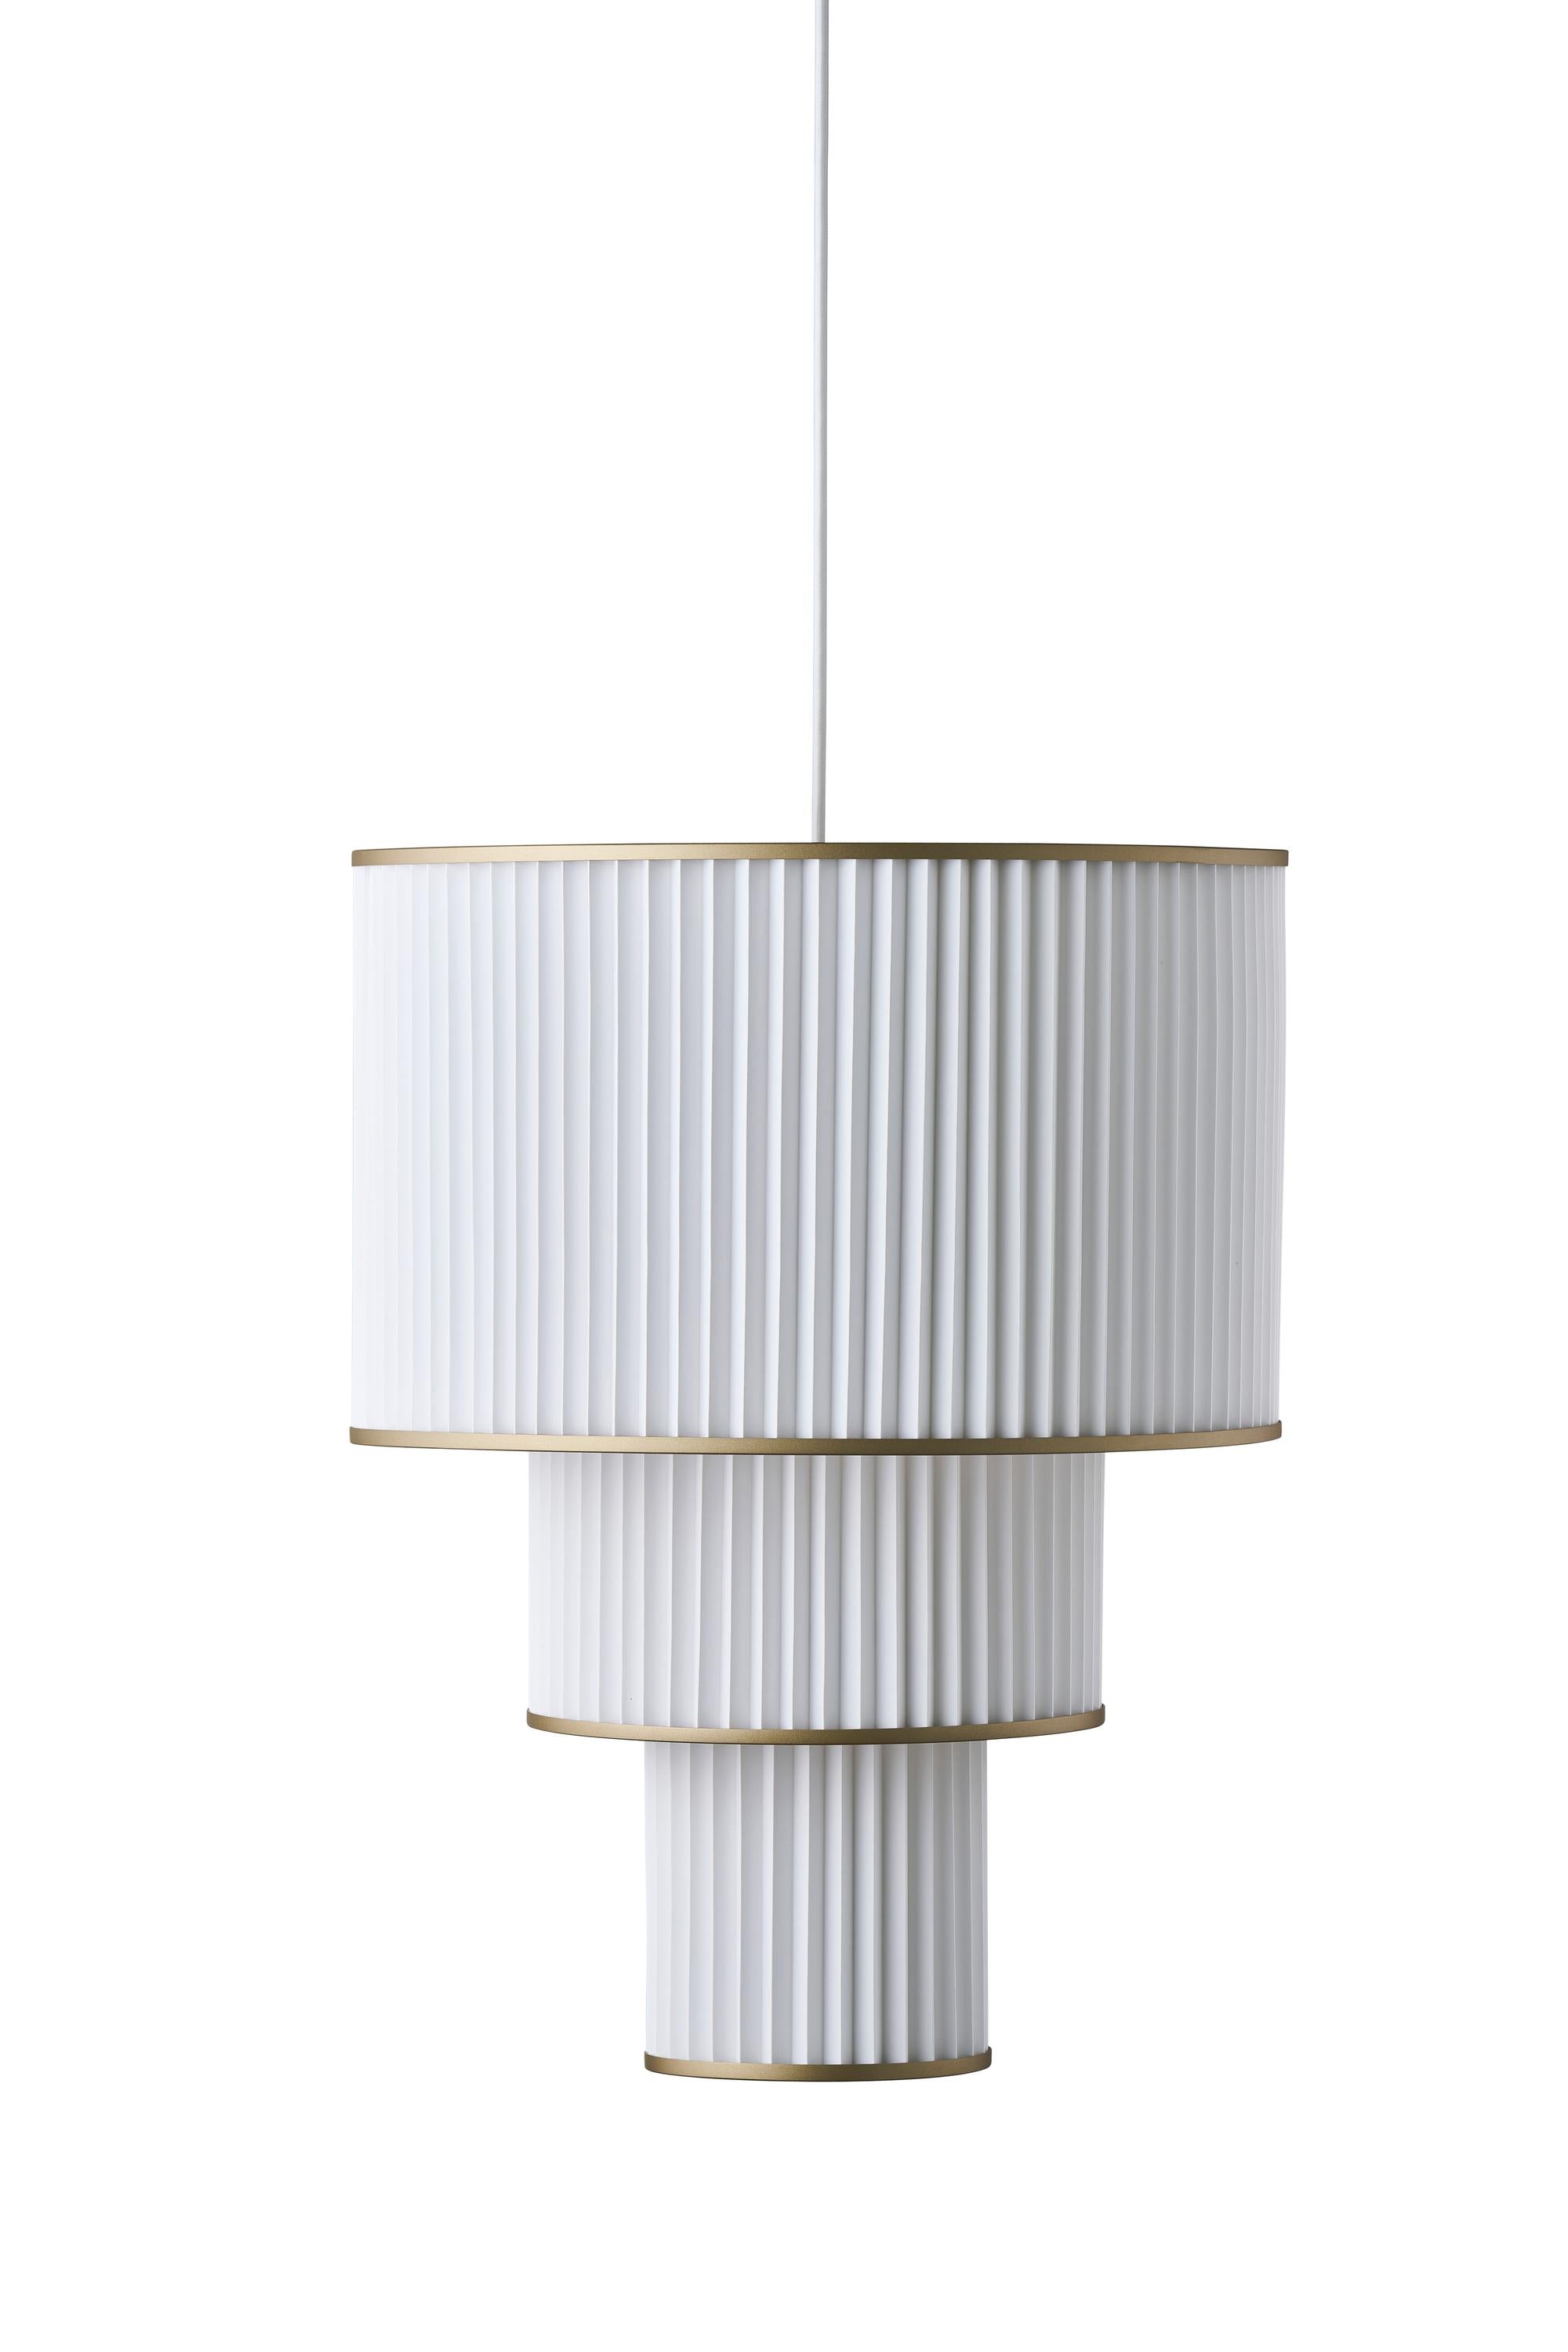 Le Klint Plivello Suspensjonslampe Golden/White med 3 nyanser (S M L)